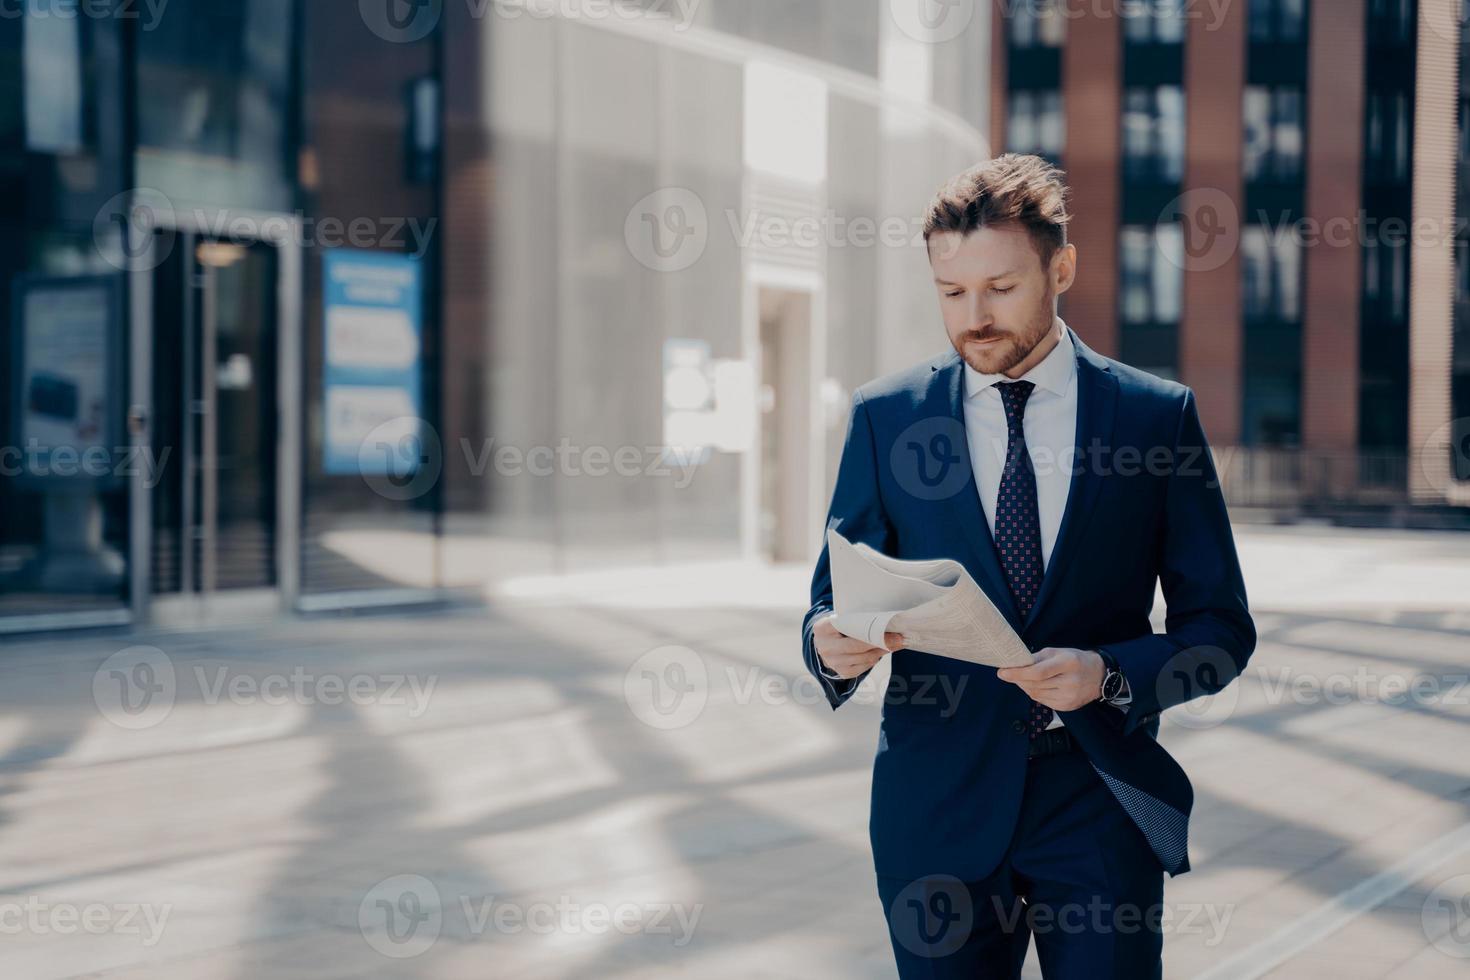 empresário de sucesso com roupa formal lê jornal enquanto caminha foto